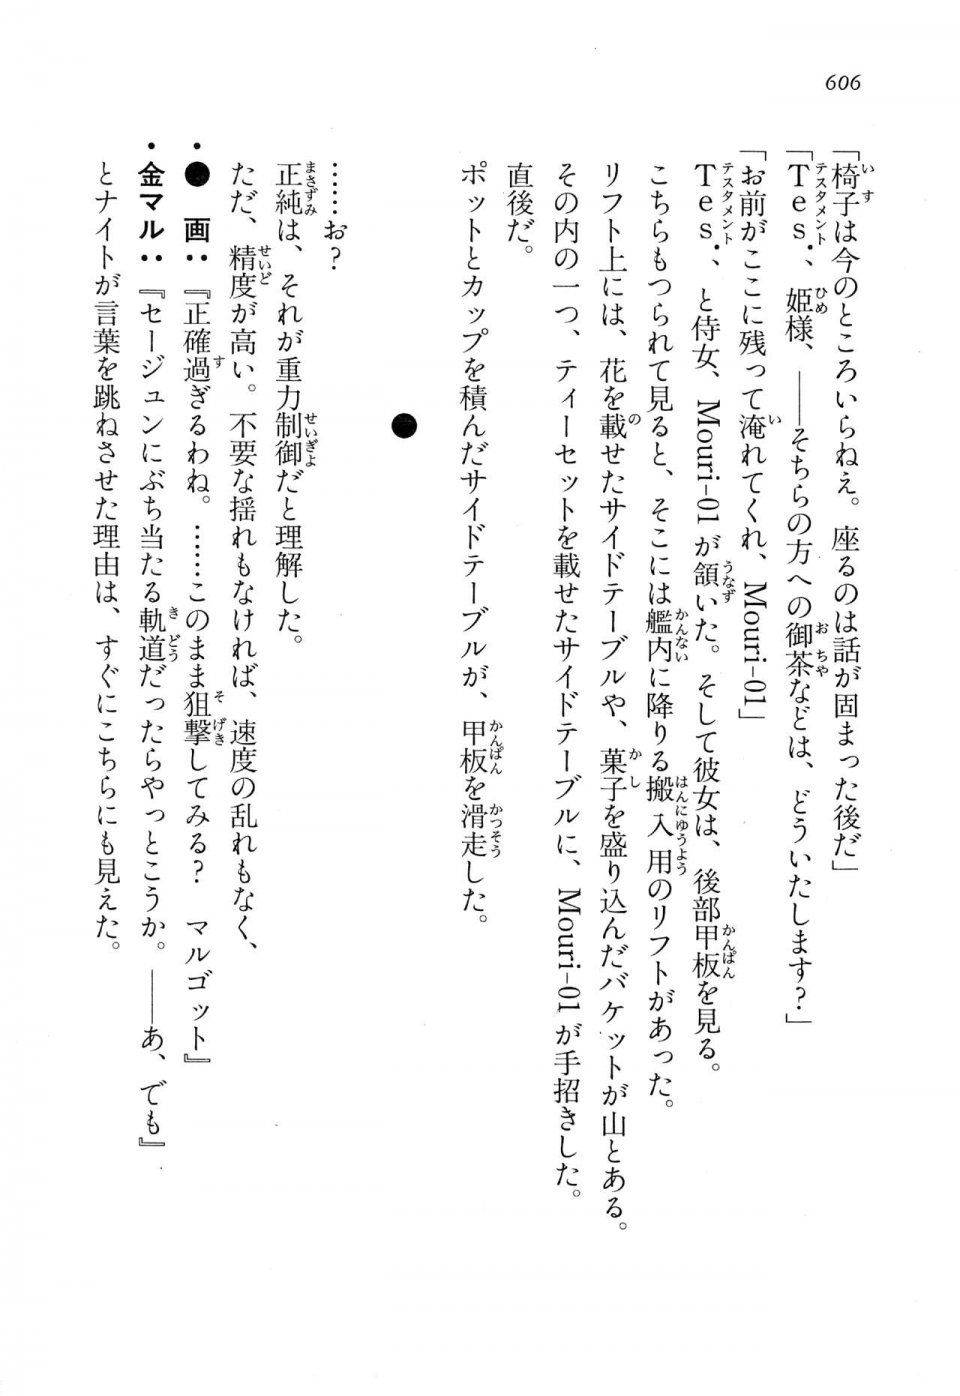 Kyoukai Senjou no Horizon LN Vol 13(6A) - Photo #606